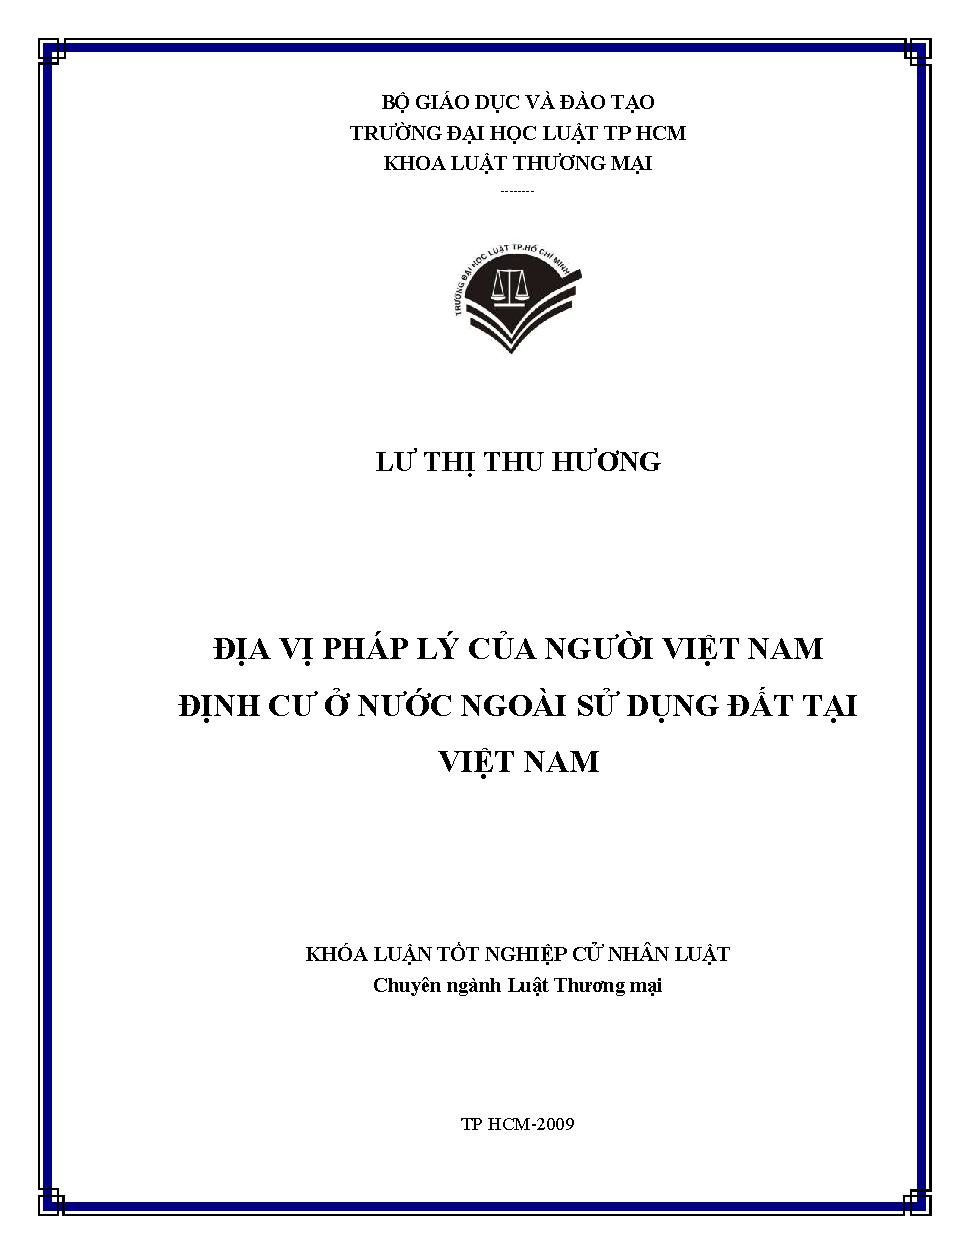 Địa vị pháp lý của người Việt Nam định cư ở nước ngoài sử dụng đất tại Việt Nam